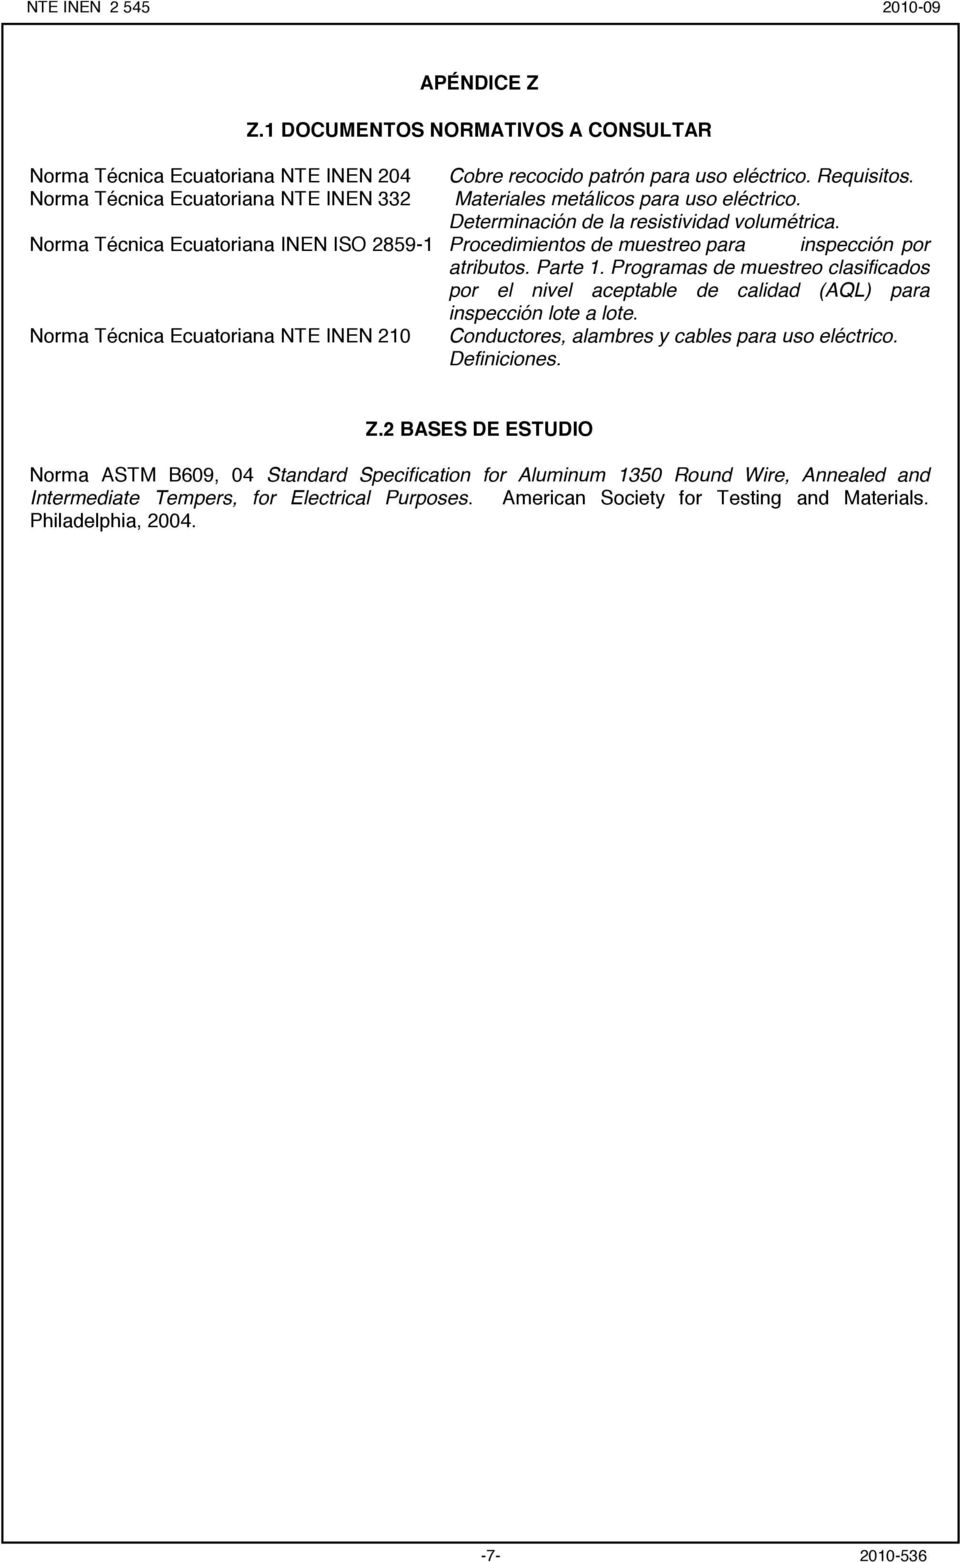 Norma Técnica Ecuatoriana INEN ISO 2859-1 Procedimientos de muestreo para inspección por atributos. Parte 1.